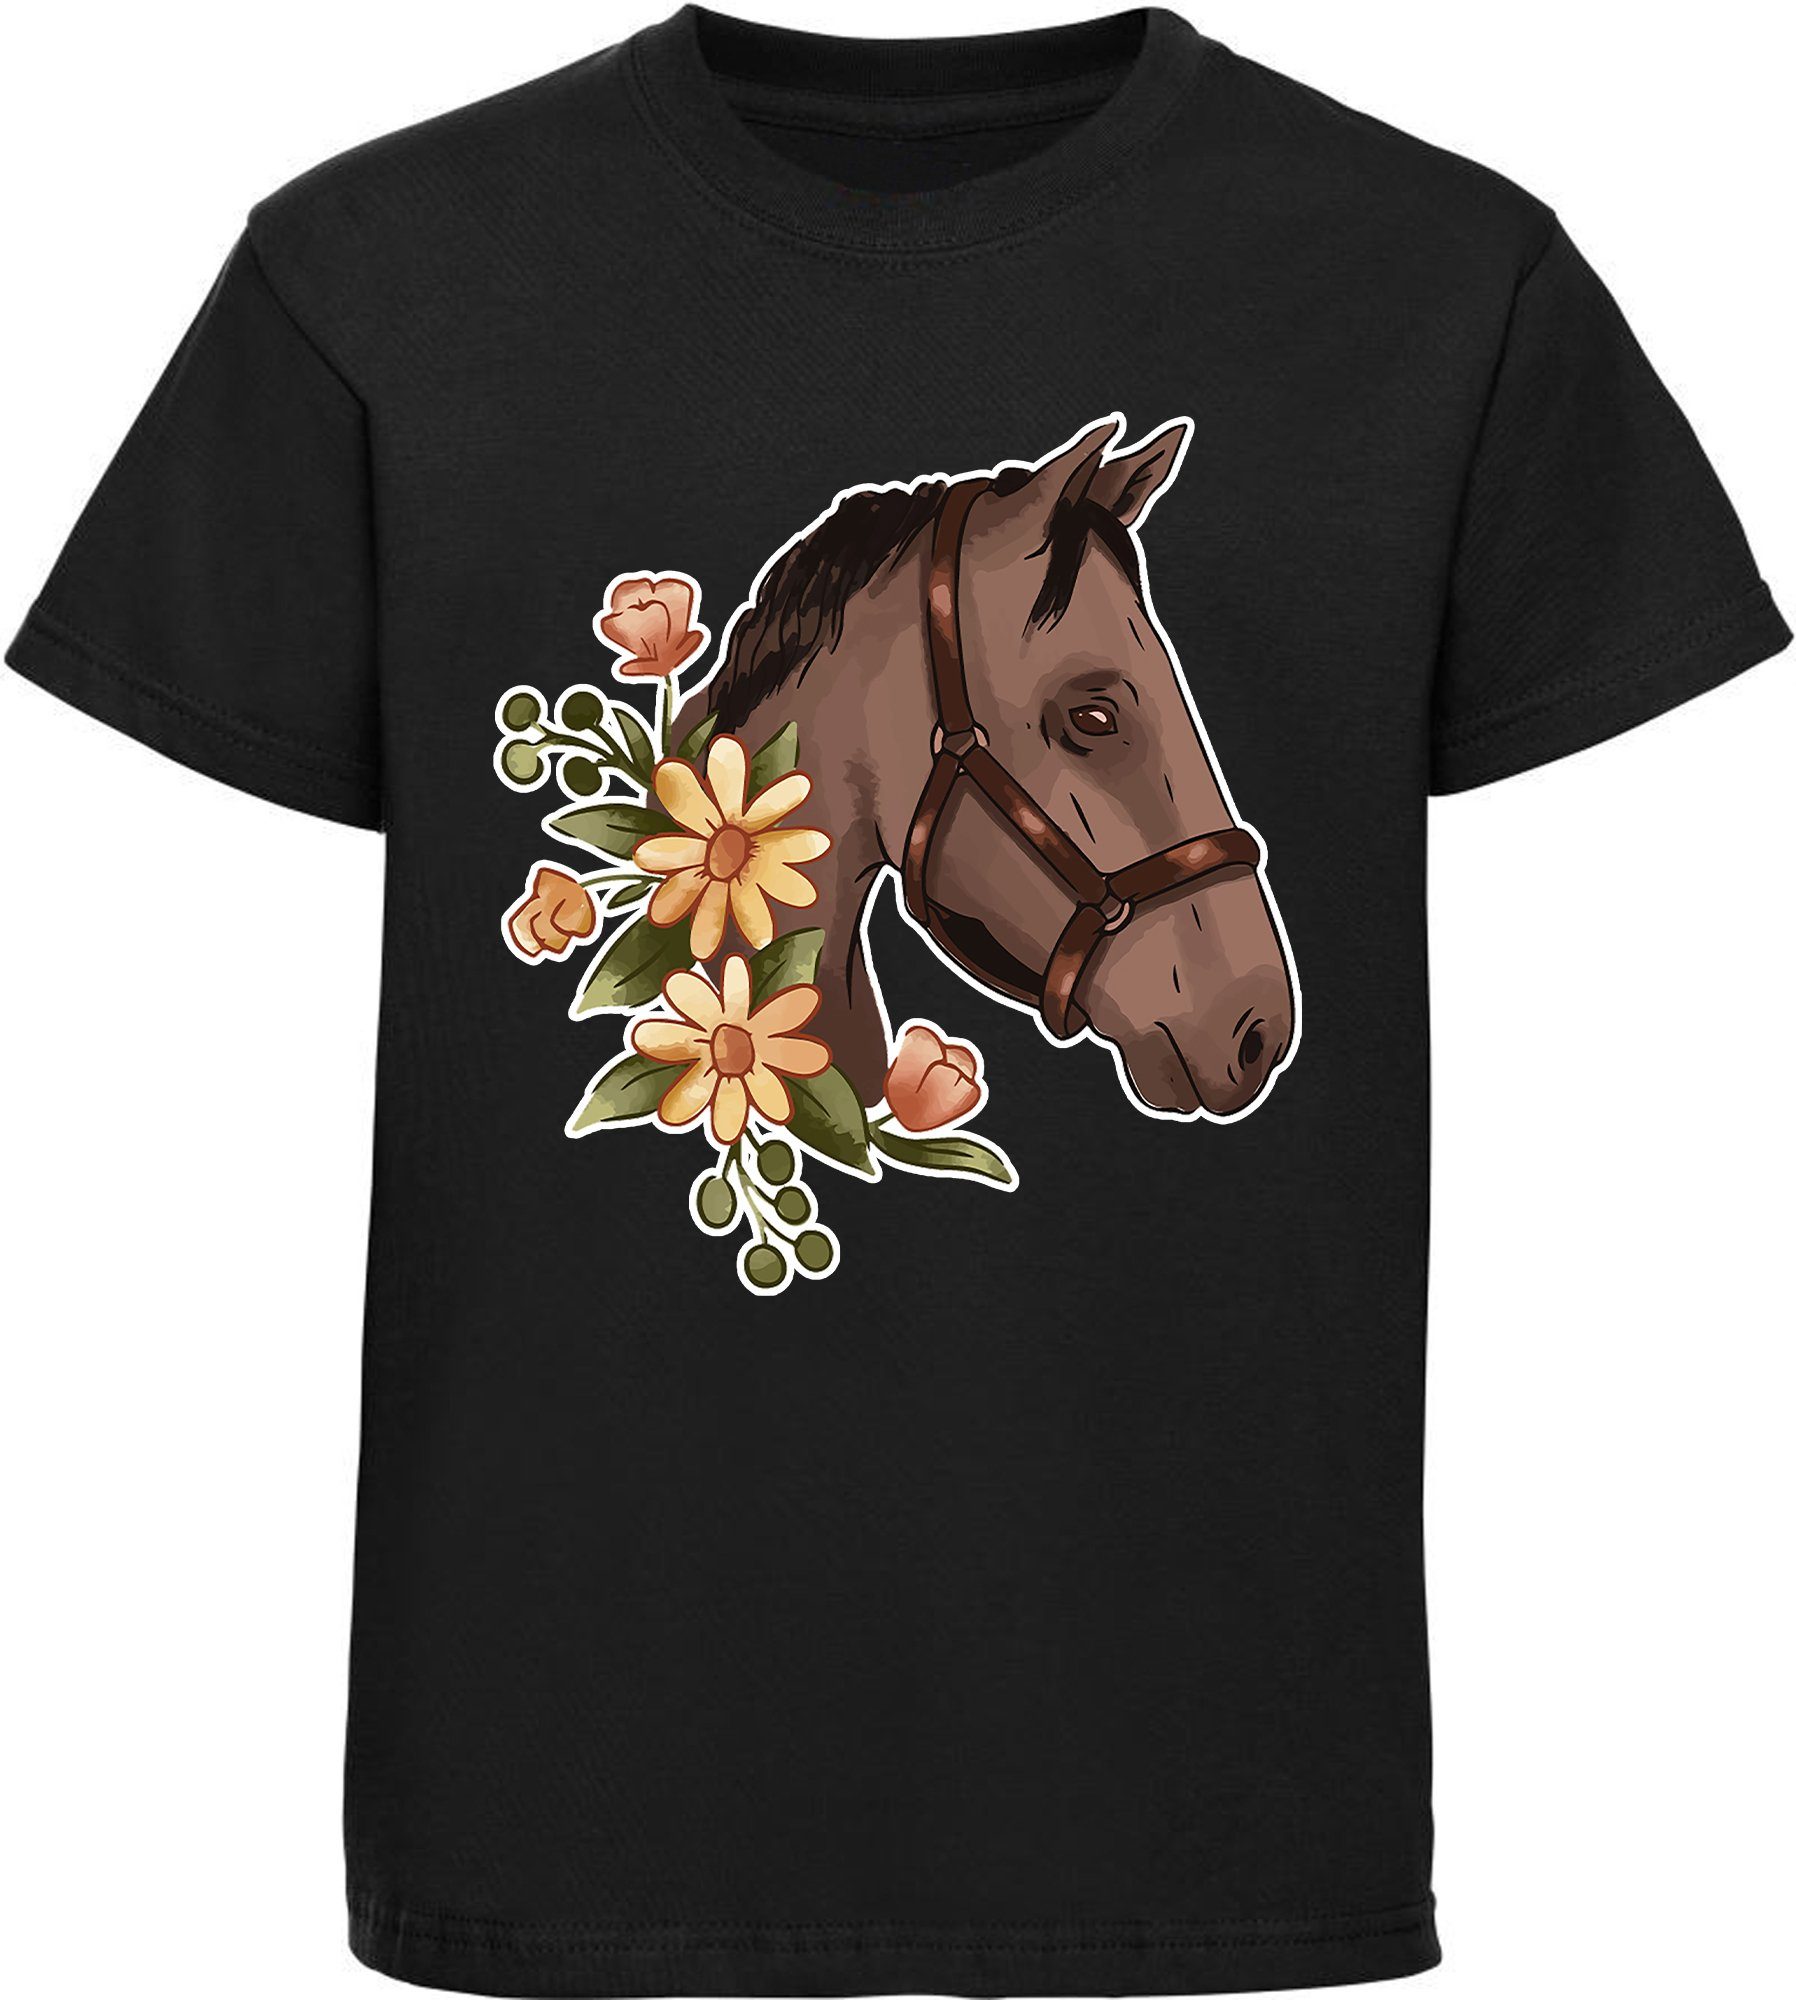 MyDesign24 Print-Shirt bedrucktes Mädchen T-Shirt - Dunkelbrauner Pferdekopf mit Blumen Baumwollshirt mit Aufdruck, i180 schwarz